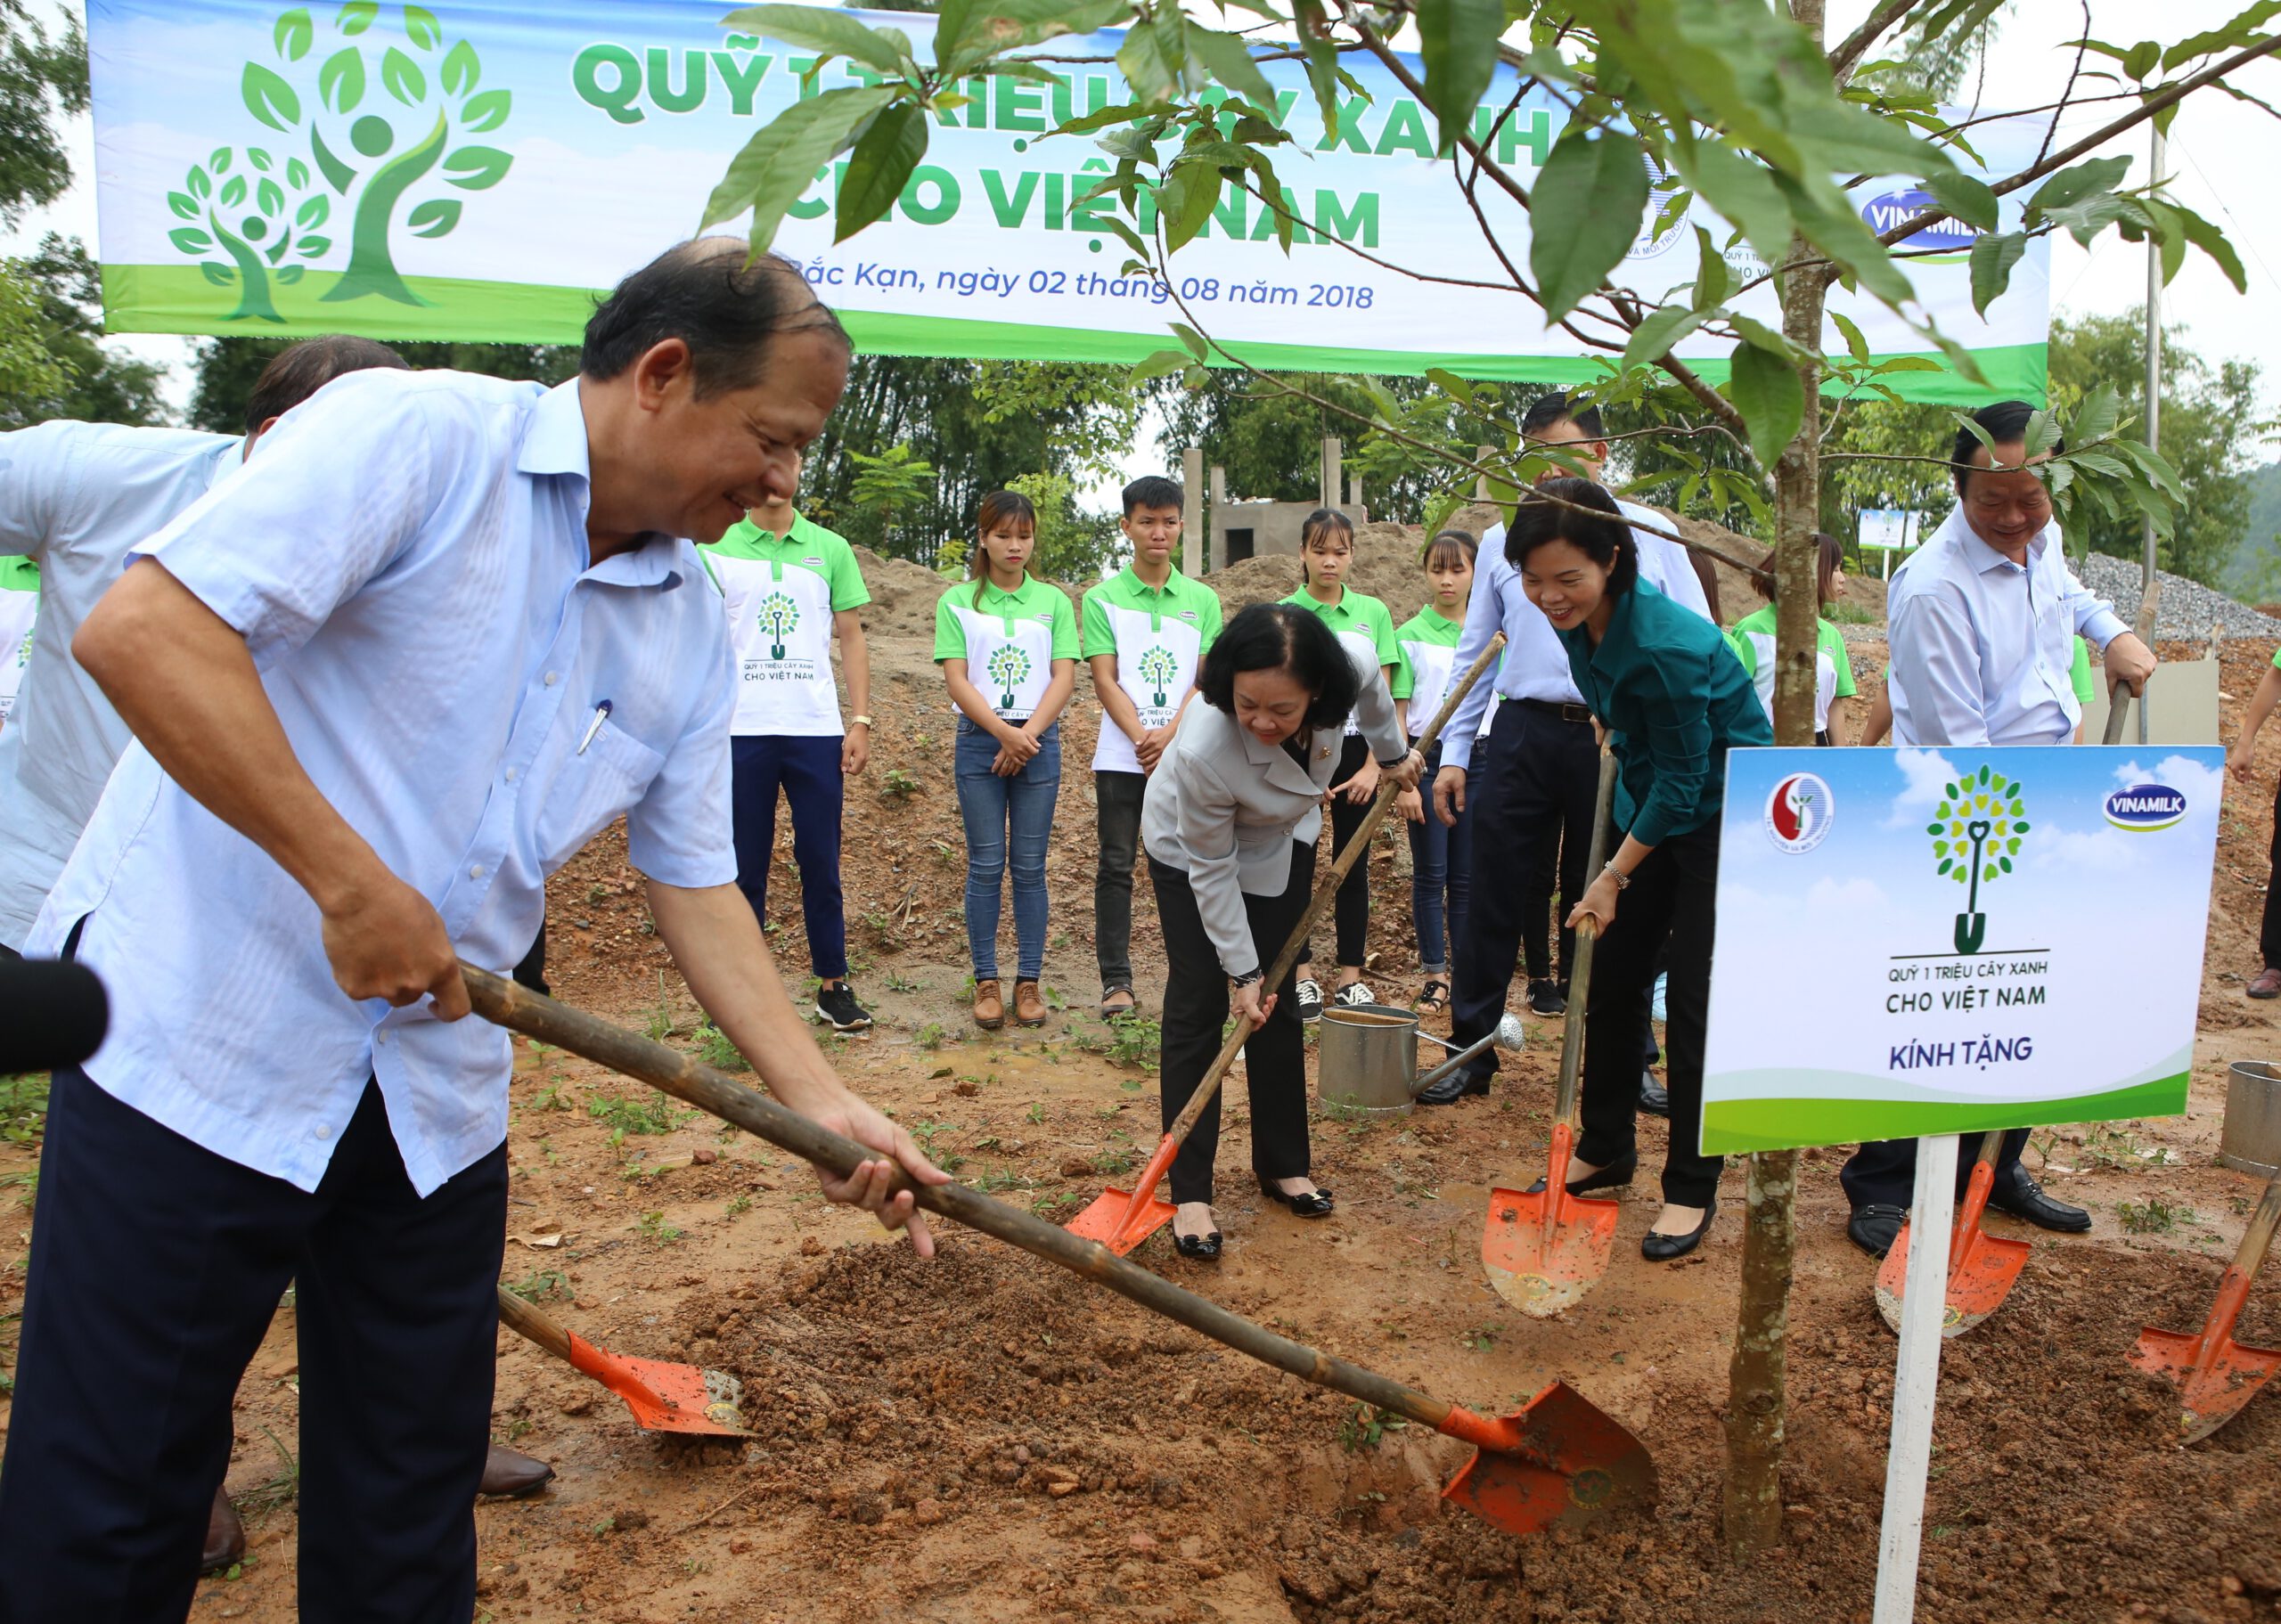 “Quỹ 1 triệu cây xanh cho Việt Nam” và Vinamilk trồng cây tại tỉnh Bắc Kạn vào năm 2018.